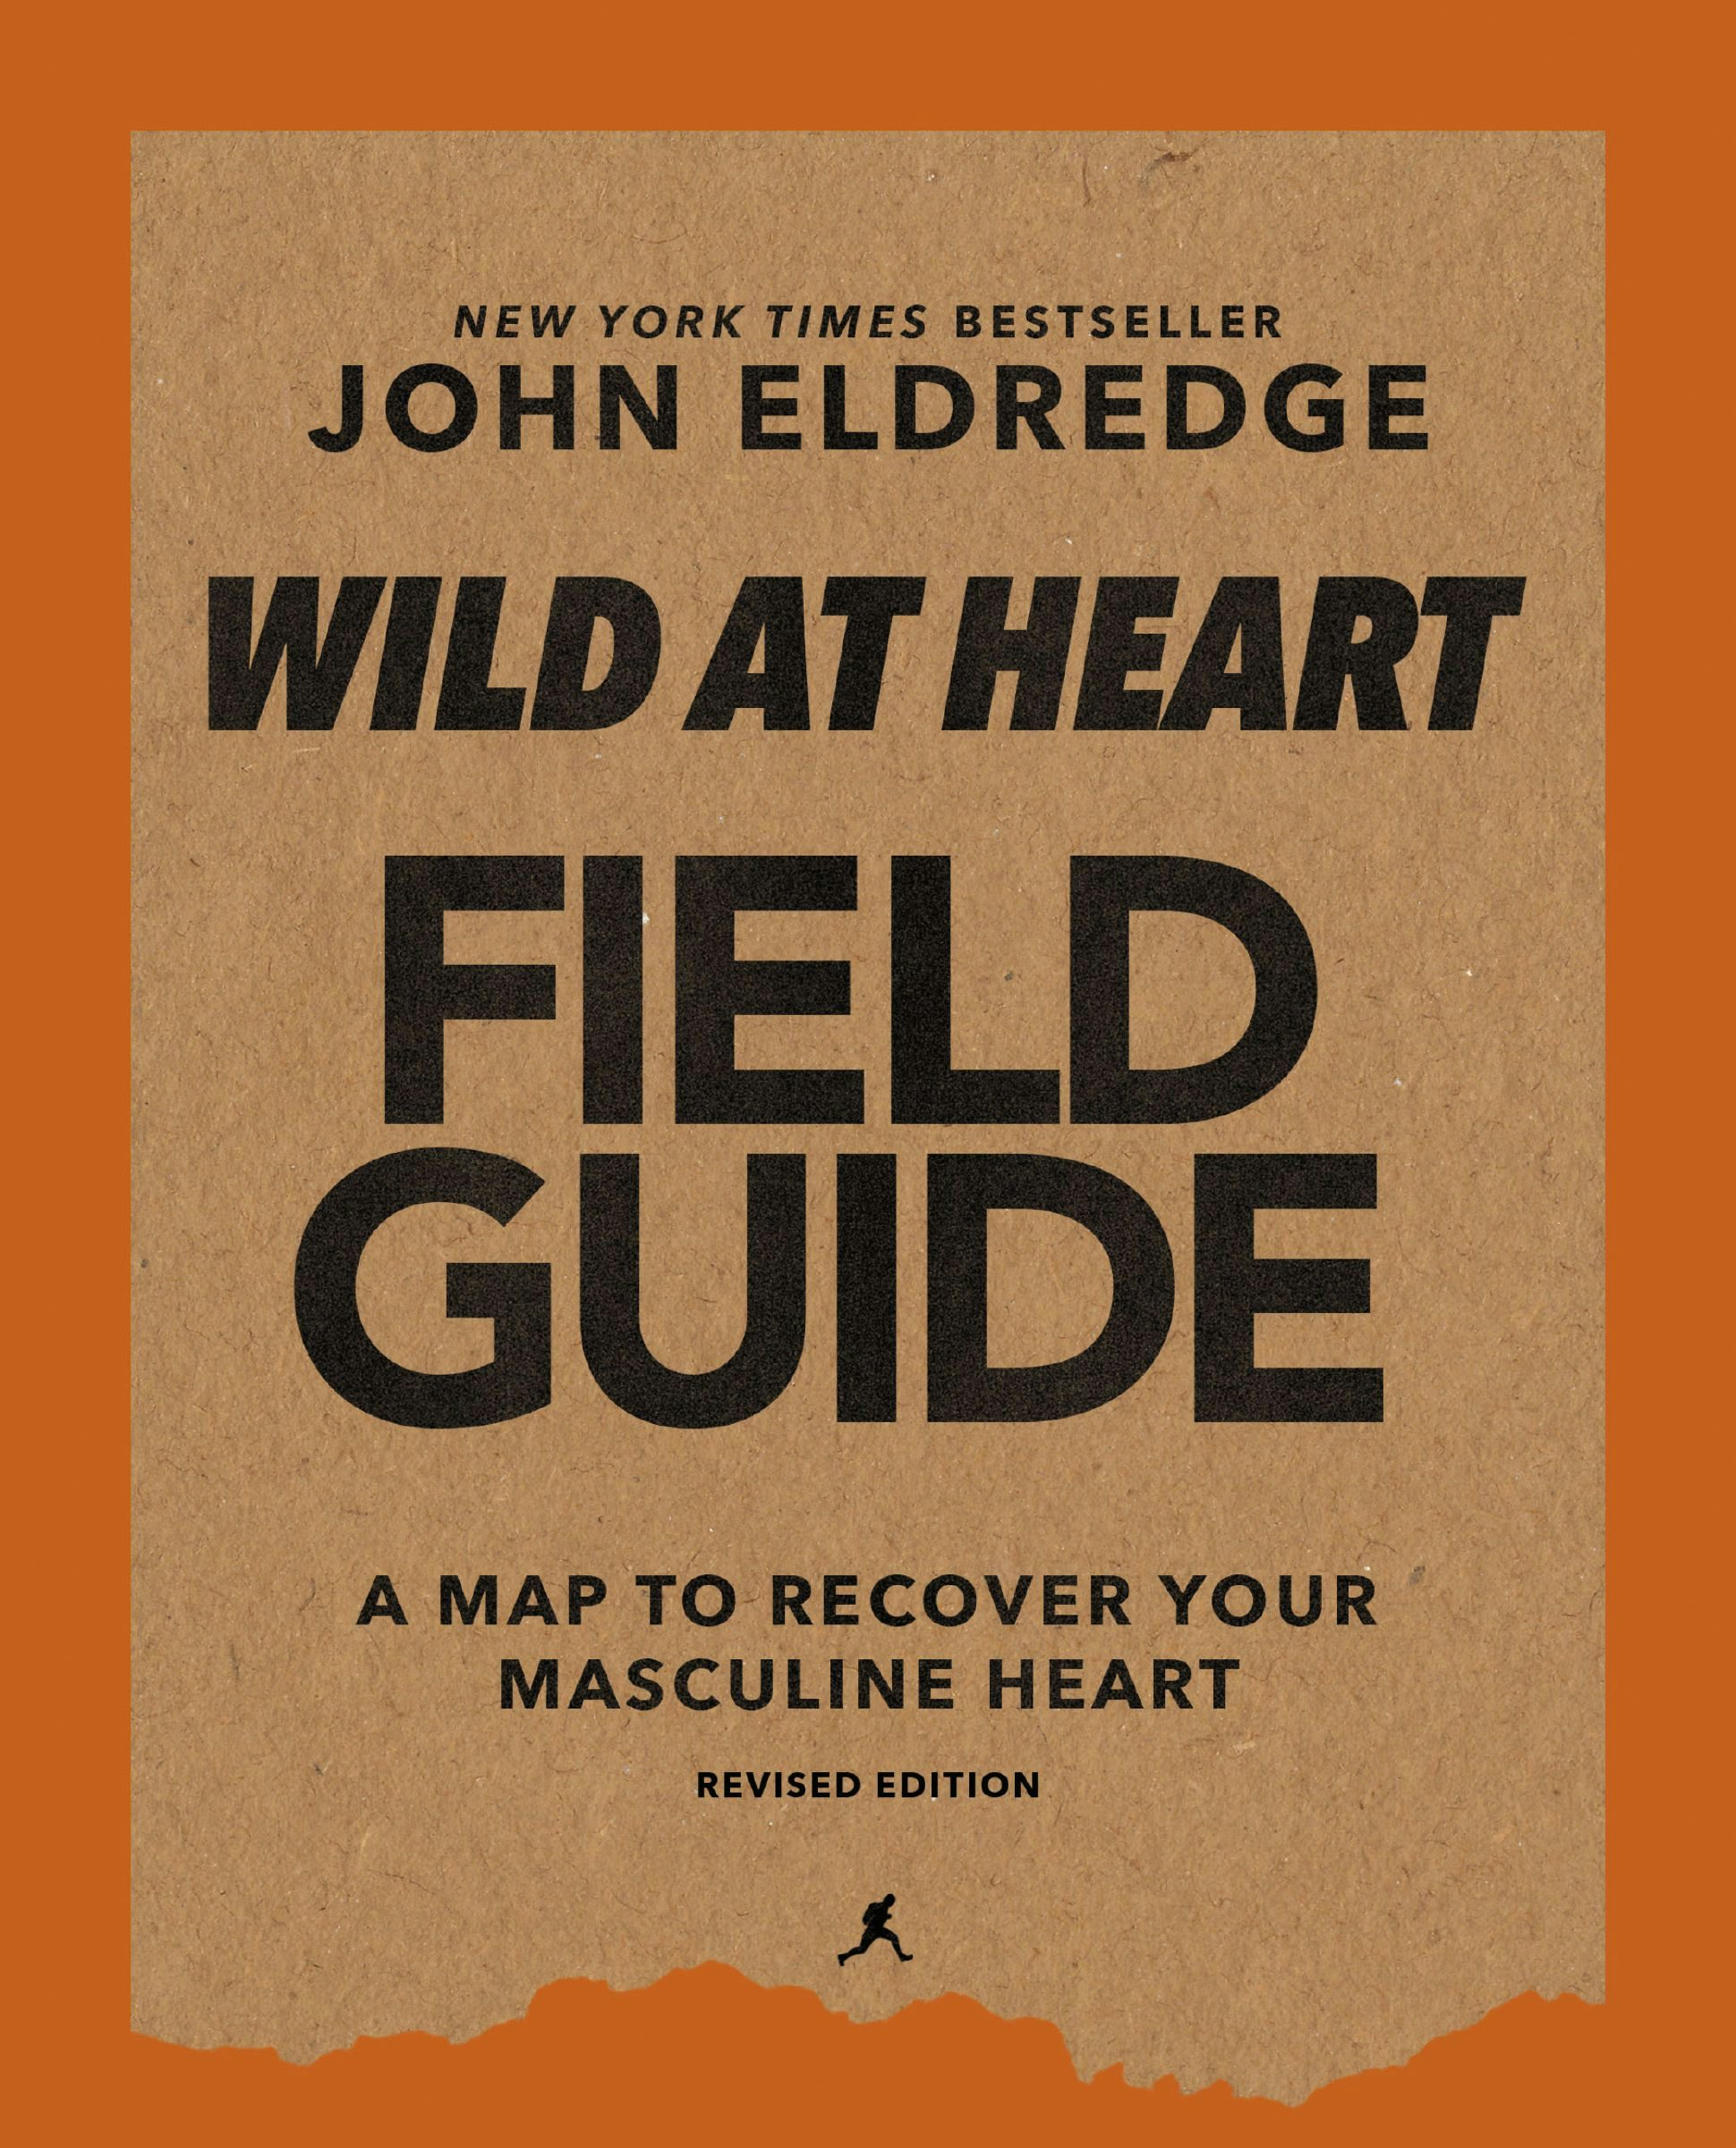 wild at heart book summary